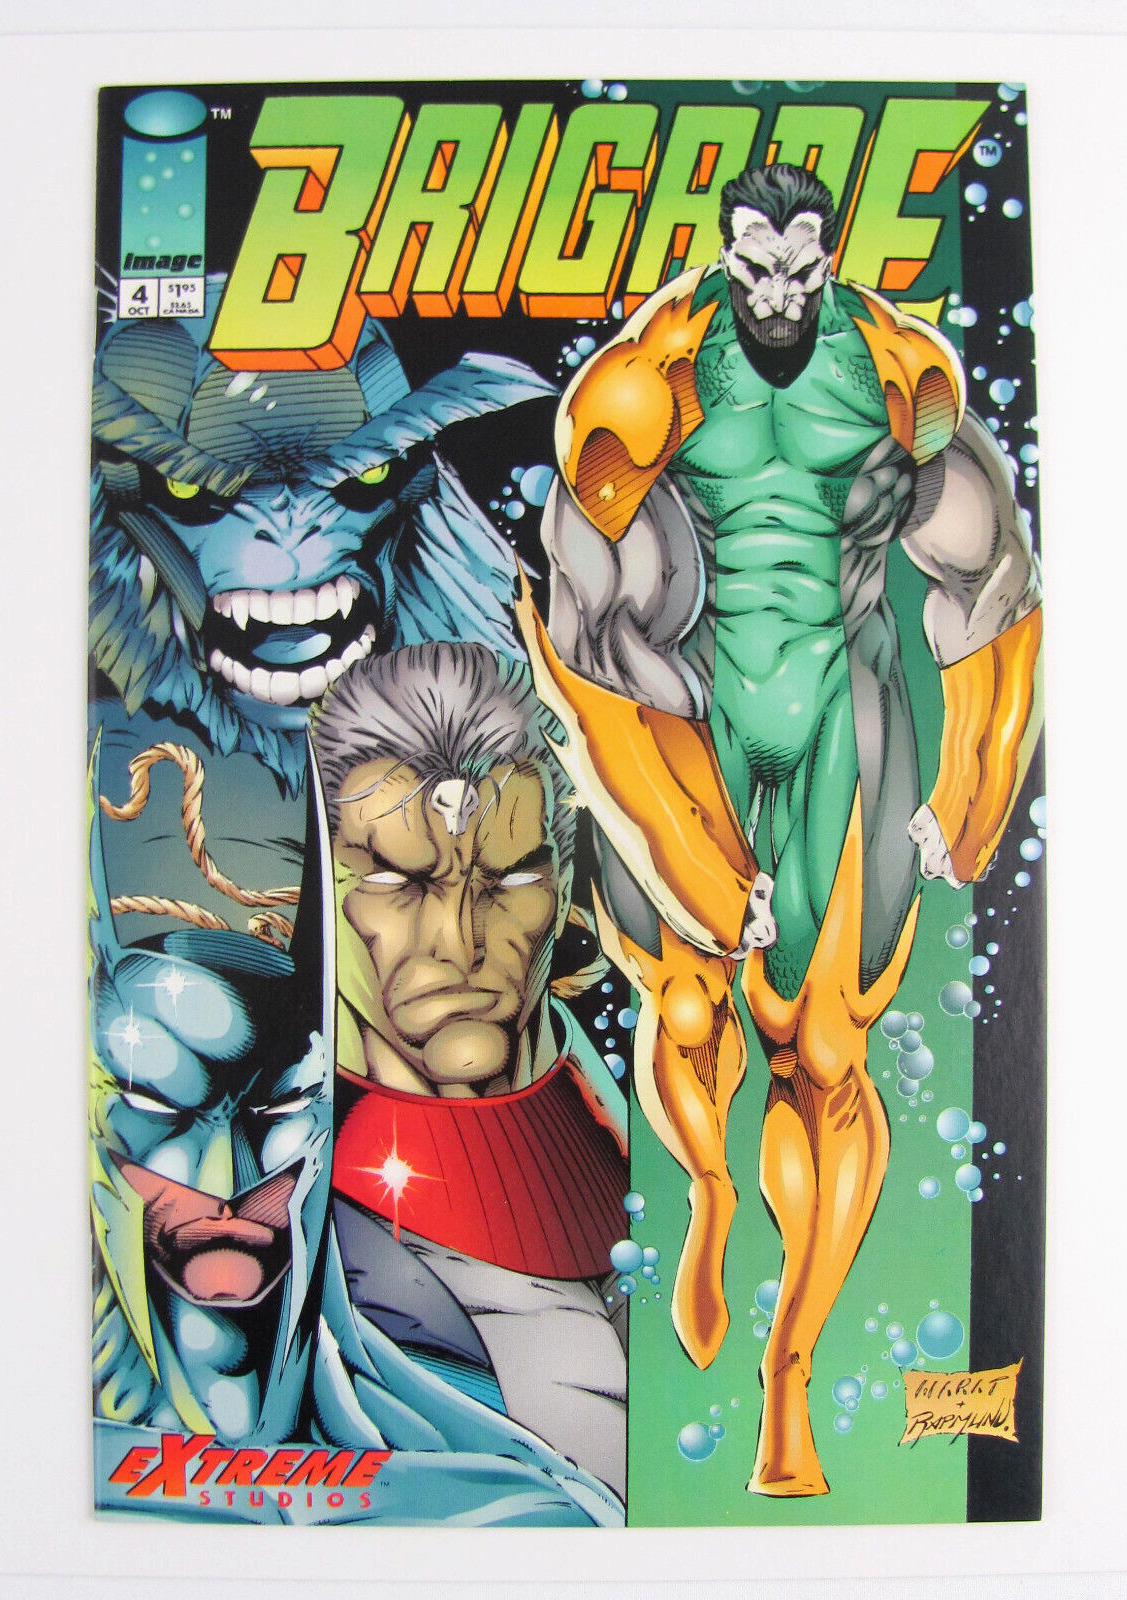 Brigade #4 Vol2 ~ Image Comics Extreme Studios Oct 1993 ~7.5+ Comic Book Liefeld